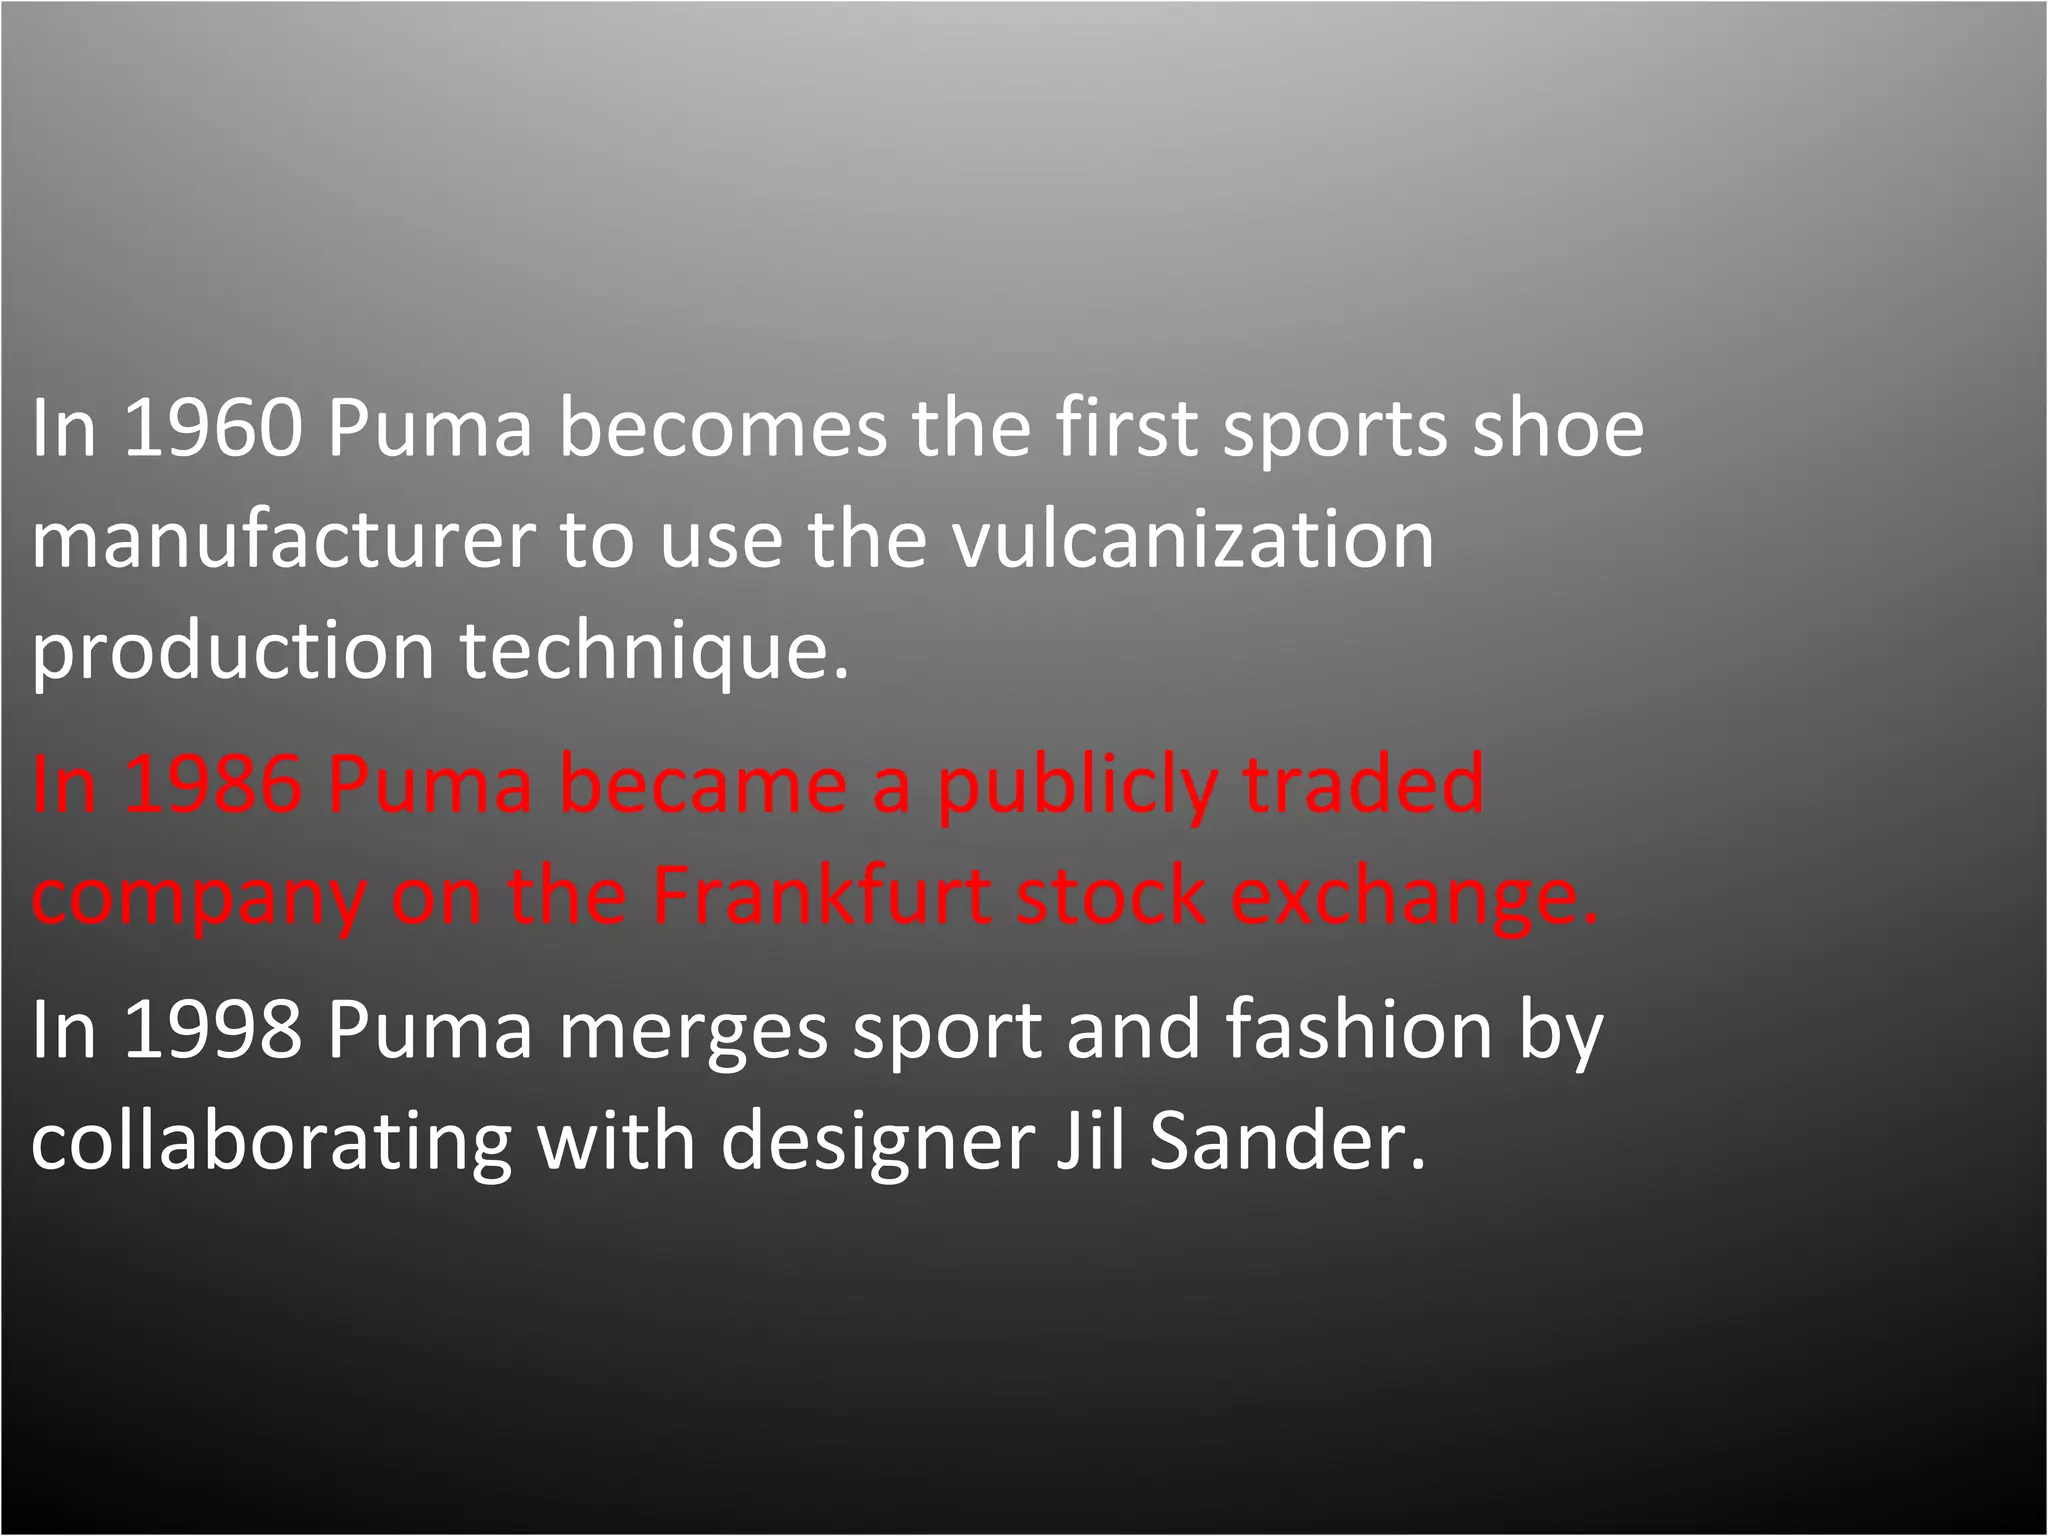 Mareo entregar Barrio Brief History of Puma